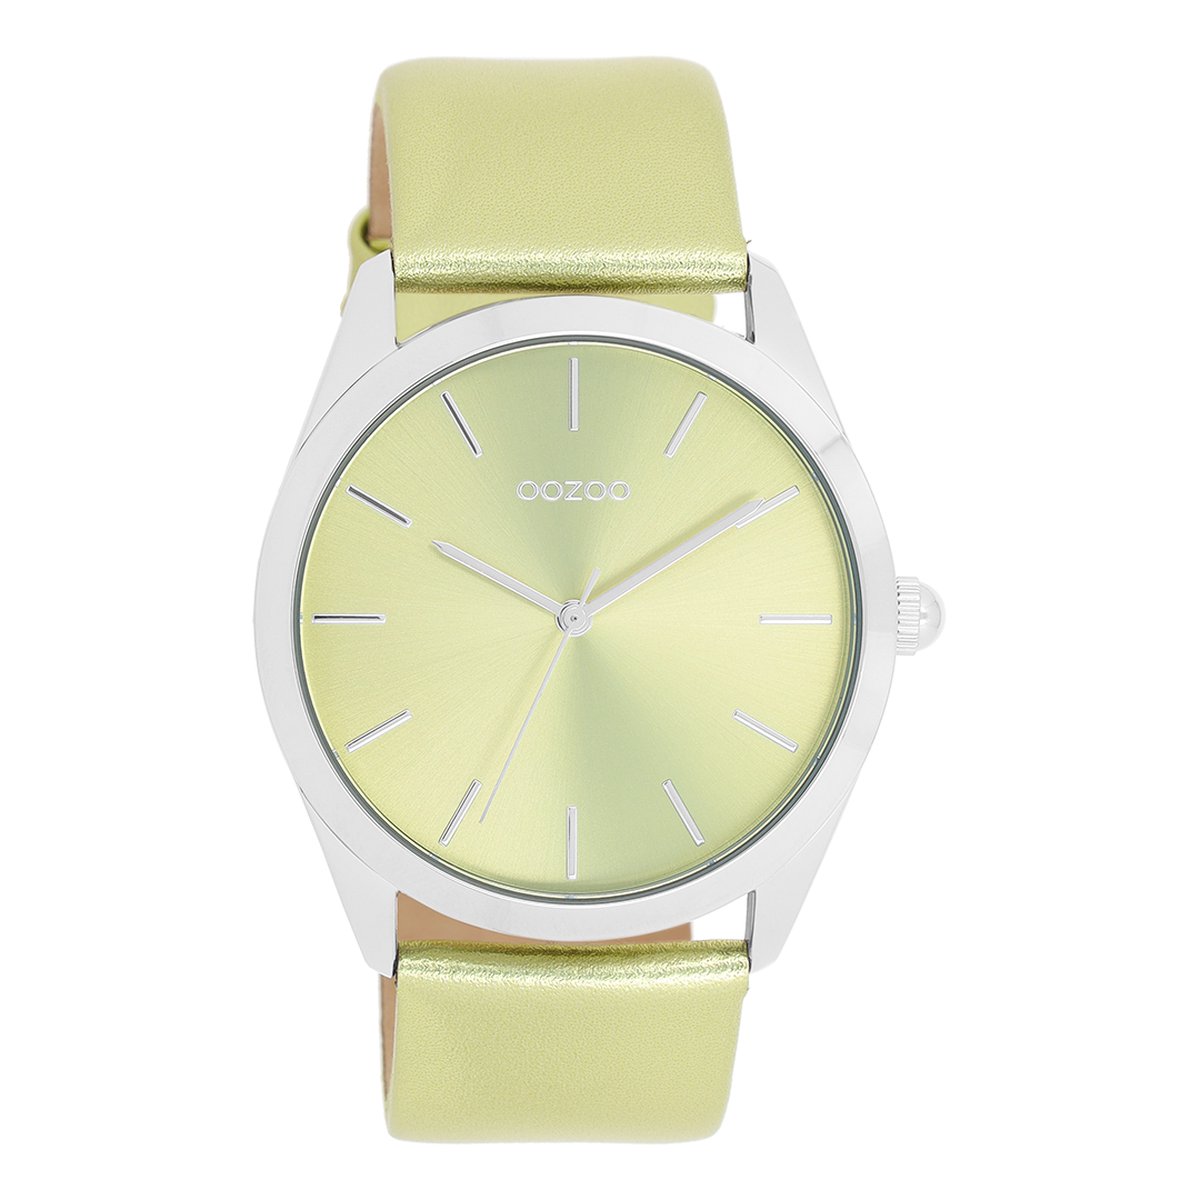 Zilverkleurige OOZOO horloge met limoen groene leren band - C11331